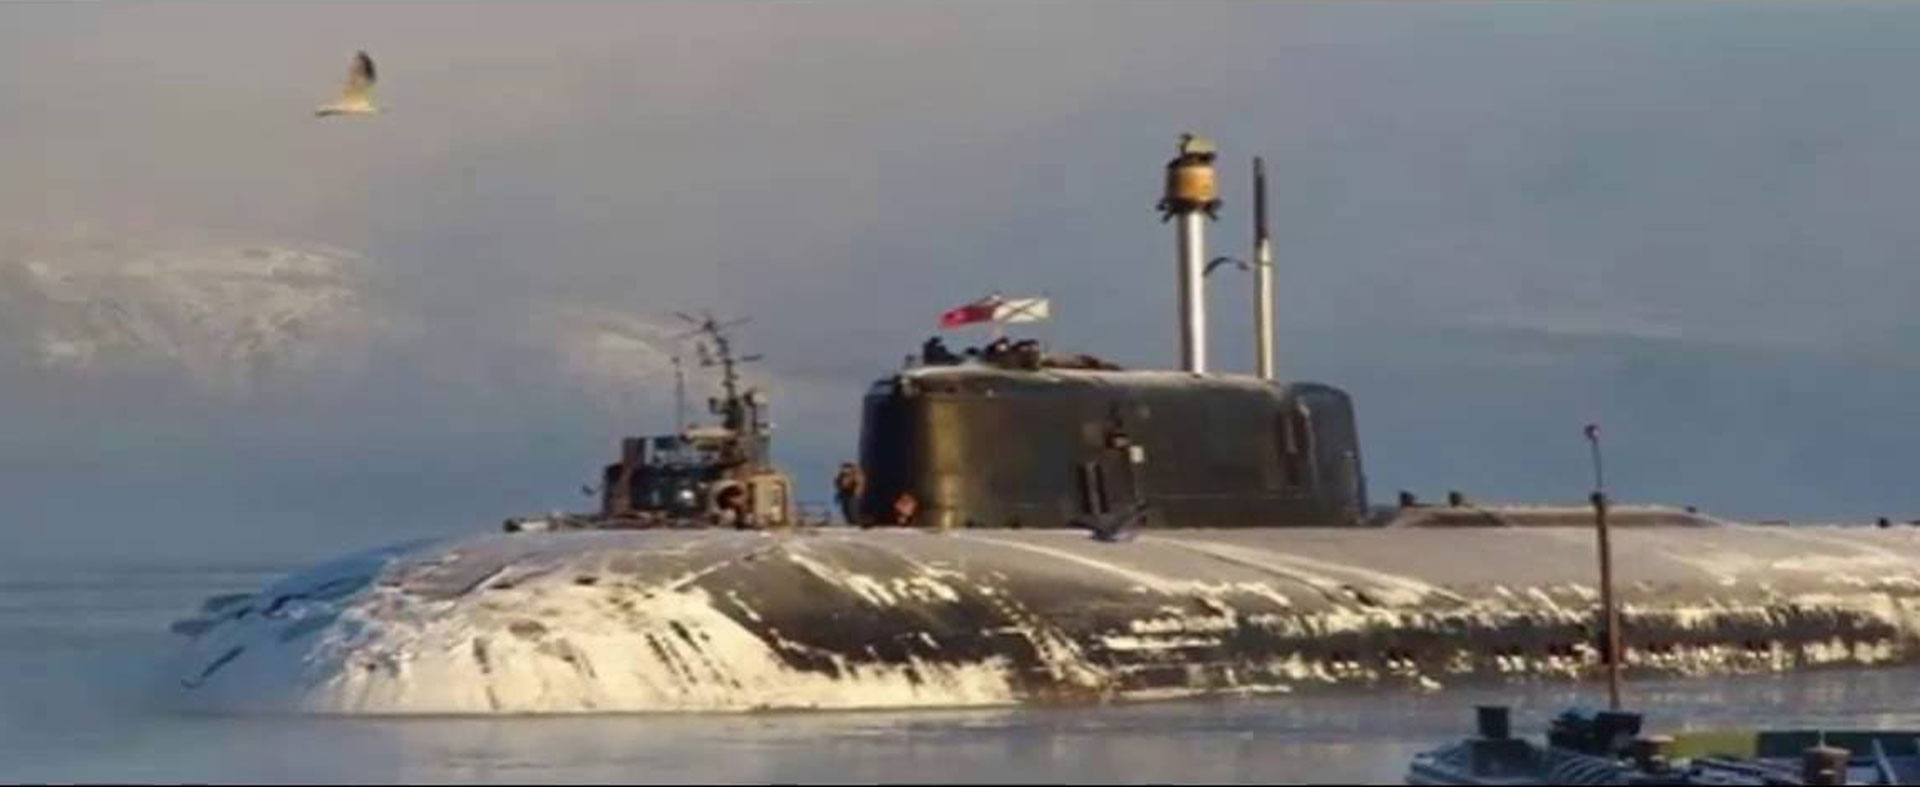 El imponente submarino Kursk. Tenía 155 metros de largo y dos cascos